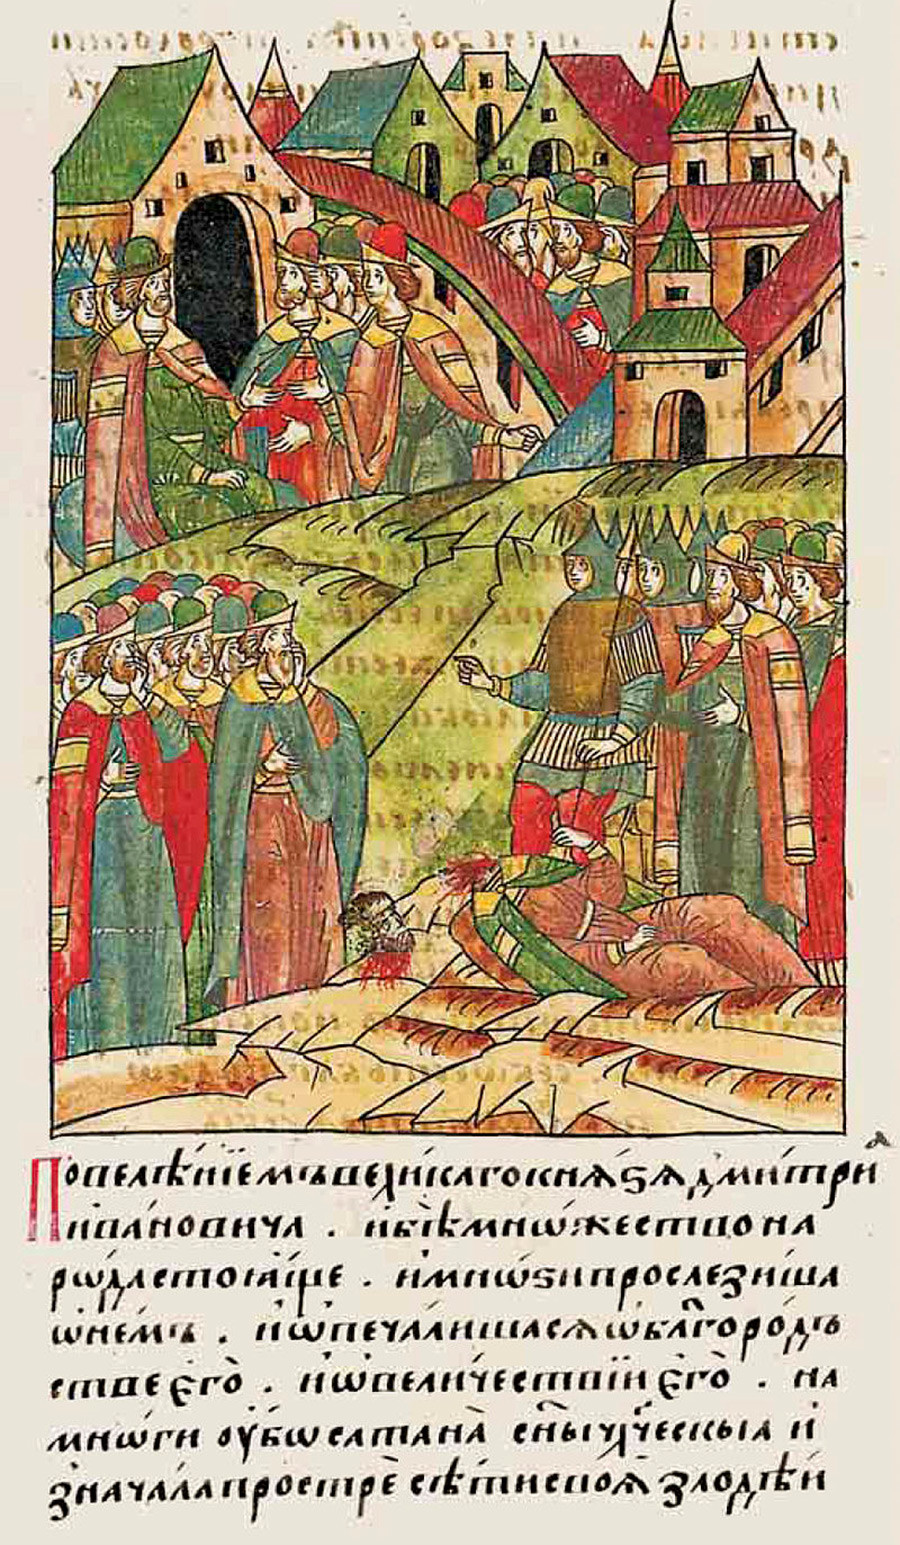 Una delle prime esecuzioni pubbliche della storia russa raffigurata nelle cronache dell'epoca